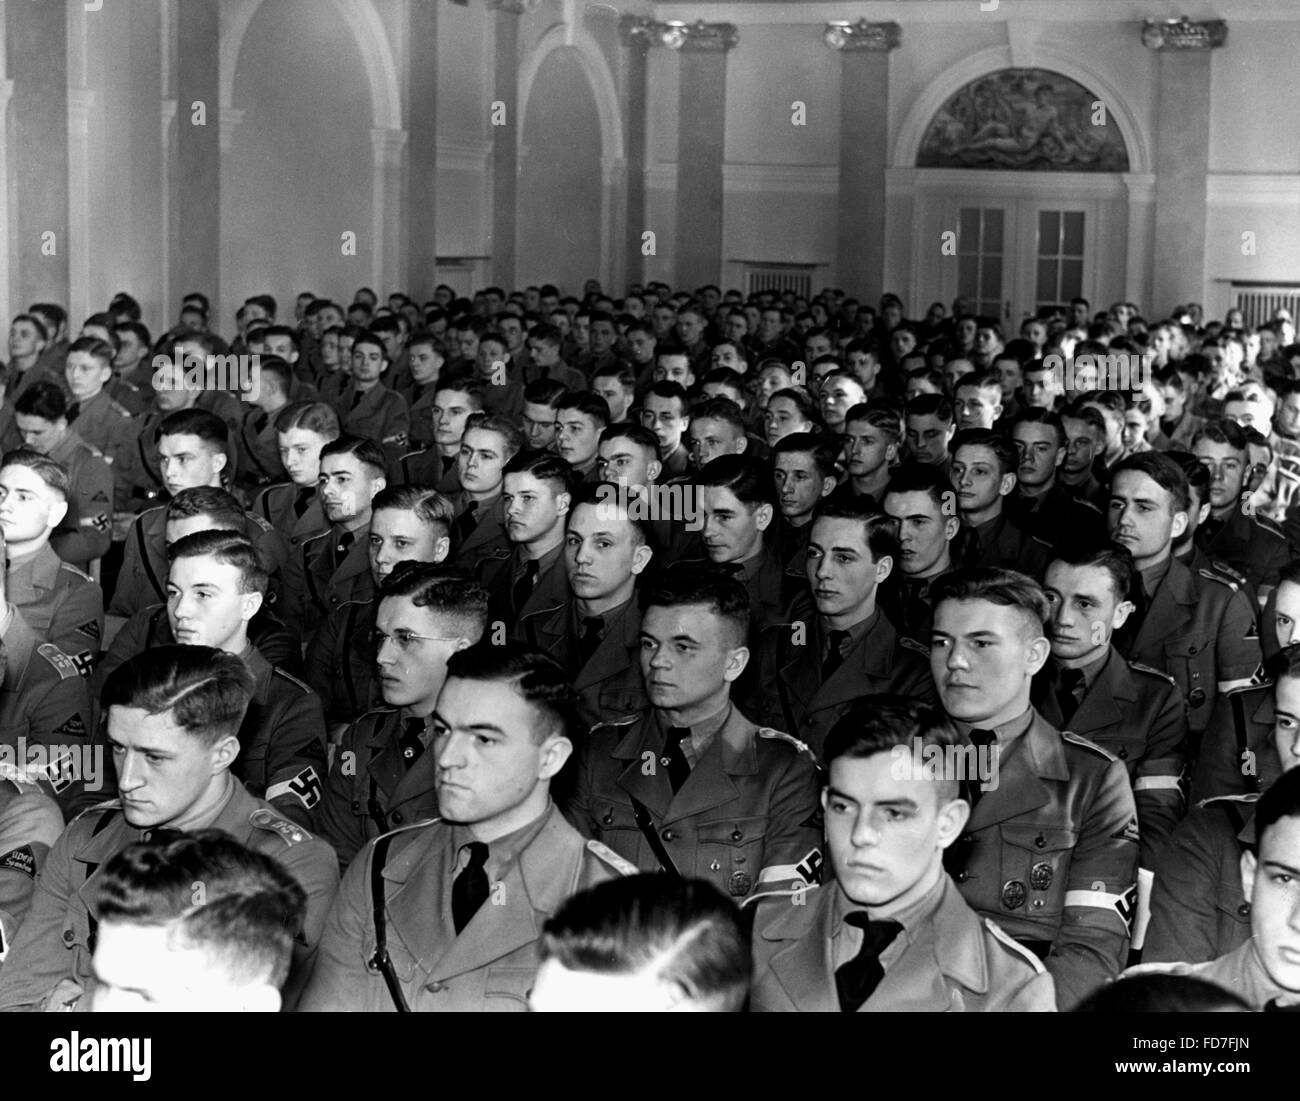 Release of NAPOLA graduates, 1938 Stock Photo